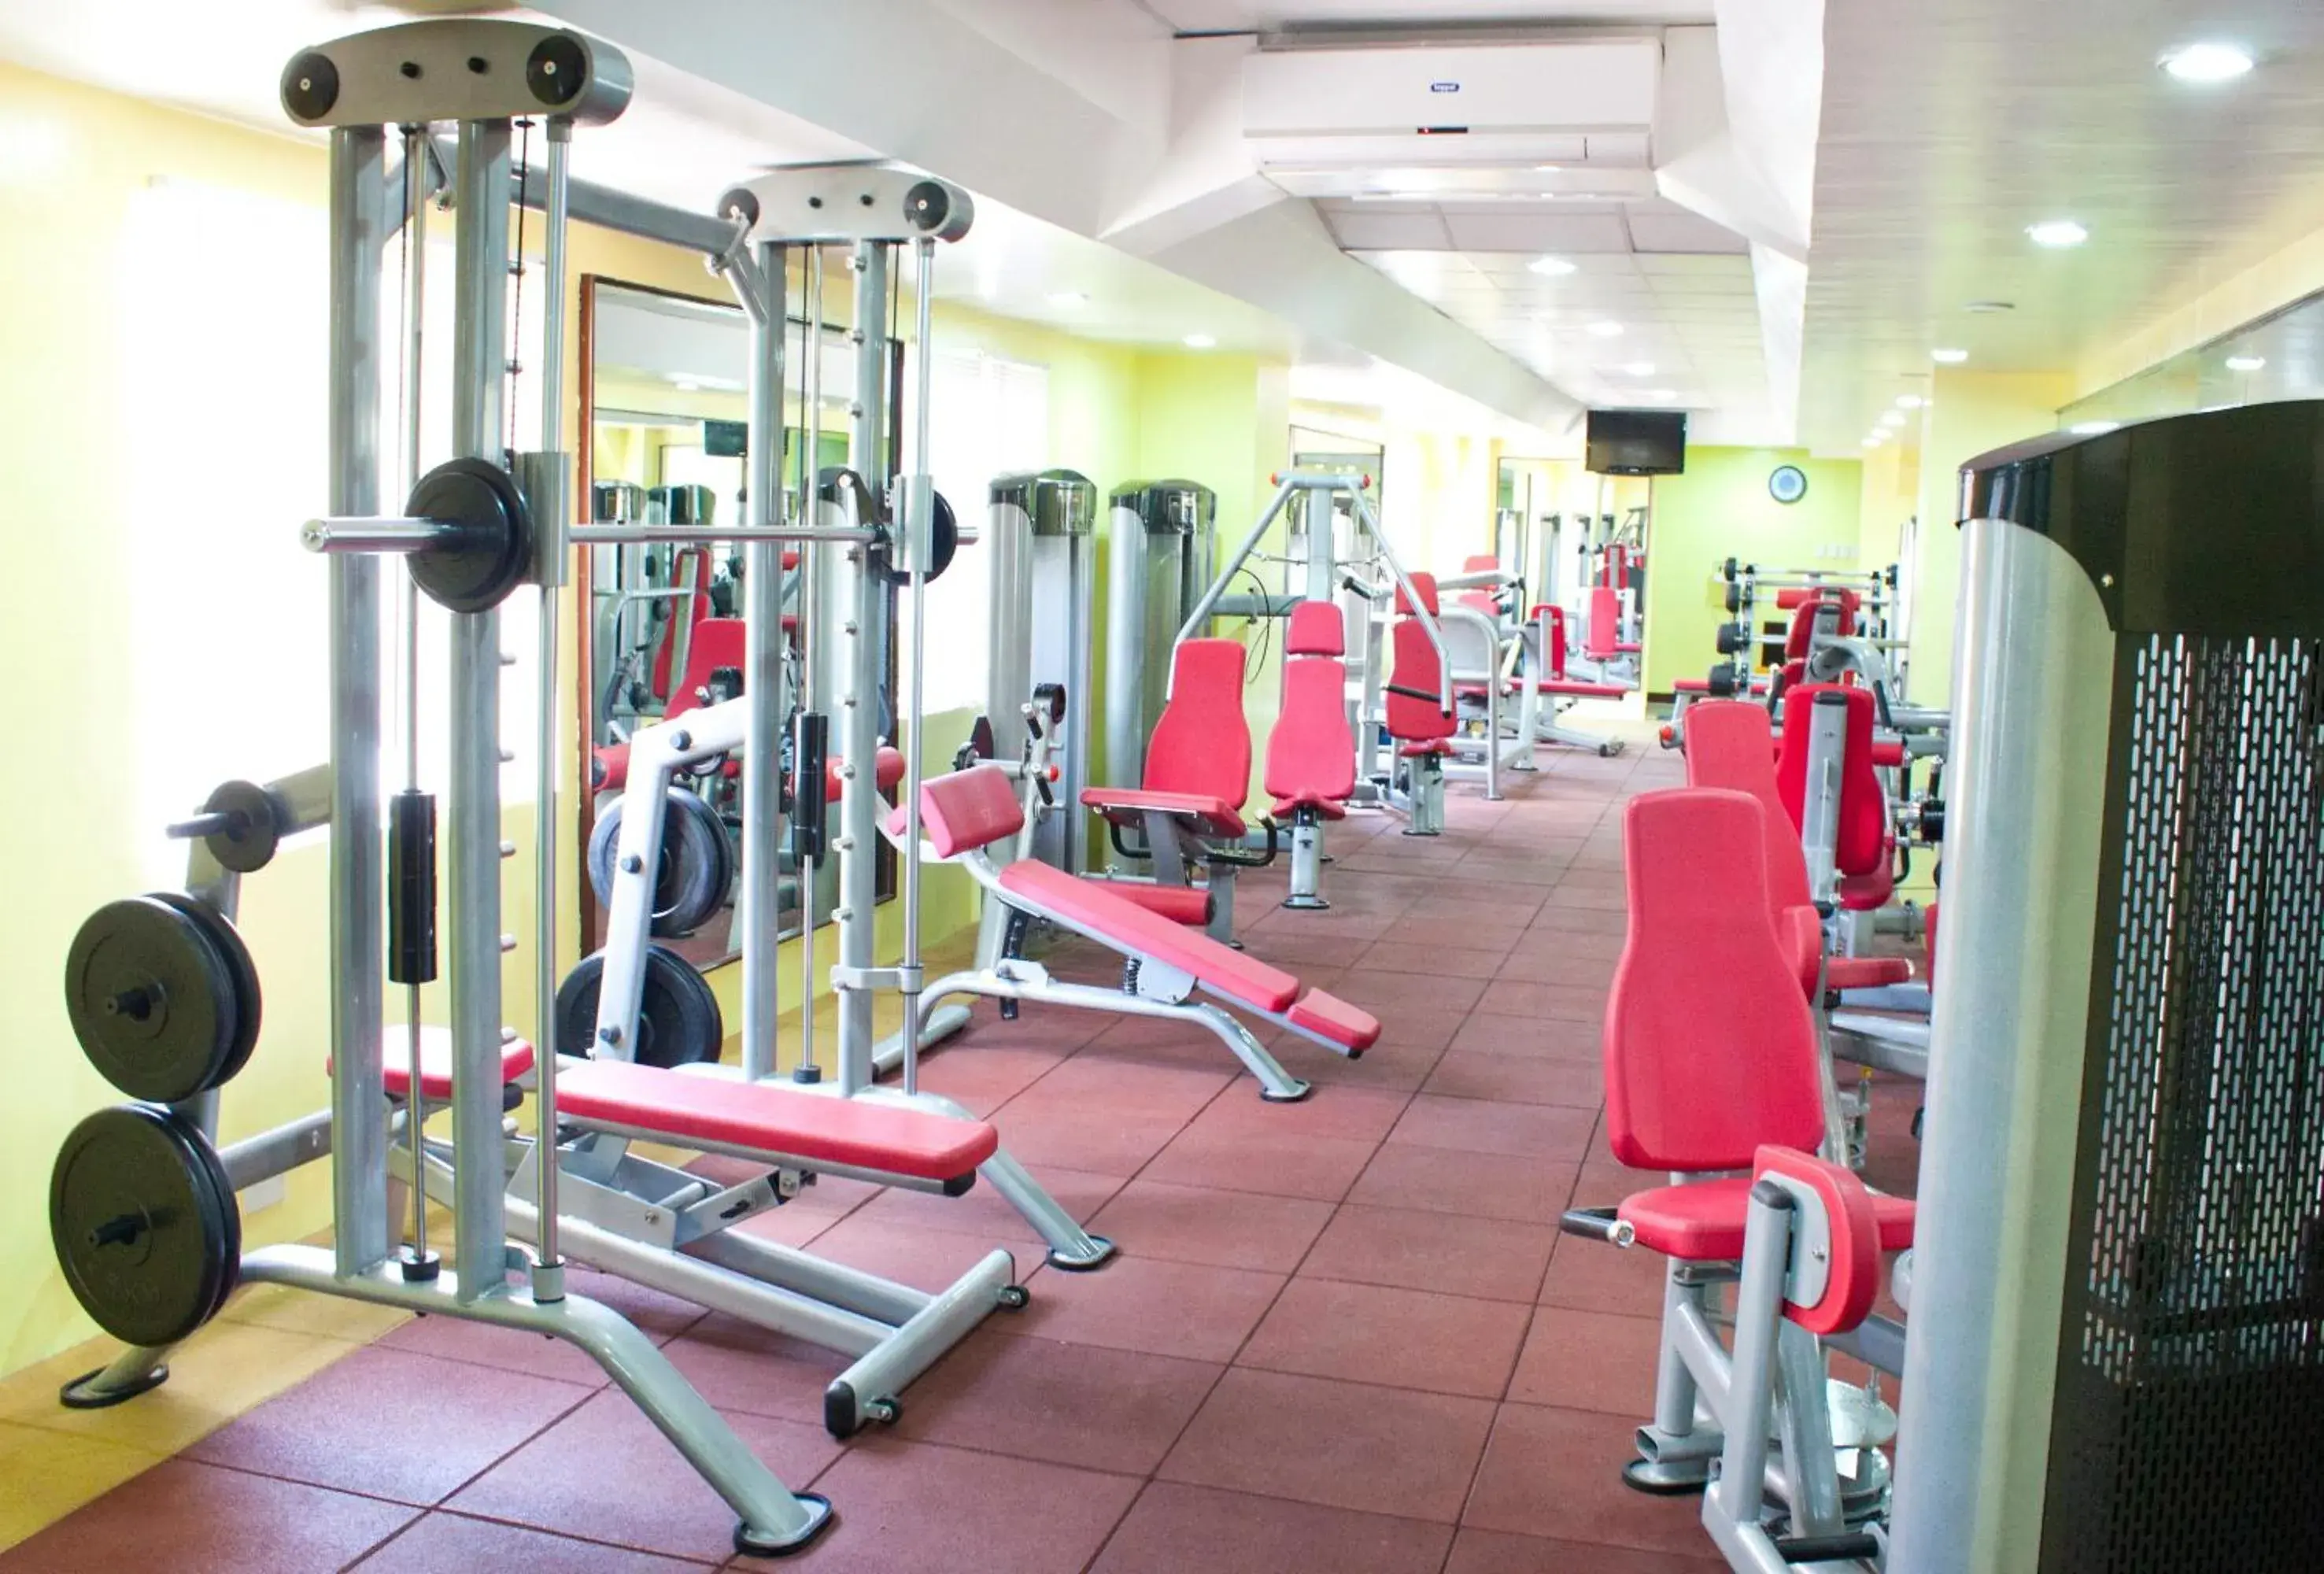 Fitness centre/facilities, Fitness Center/Facilities in Allson's Inn